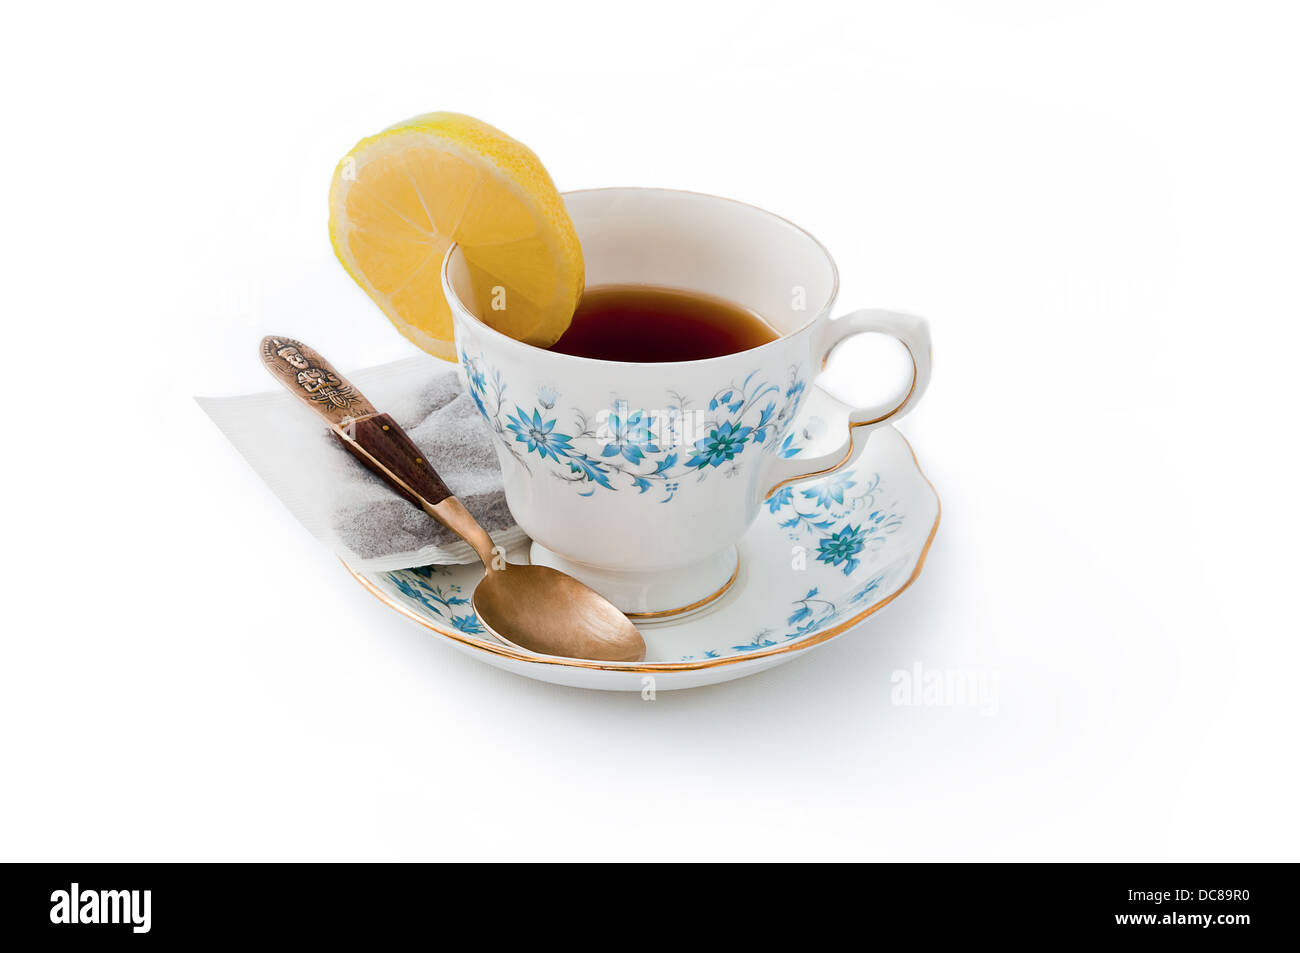 Tasse de thé au citron et la cuillère de la Chine fond blanc Banque D'Images